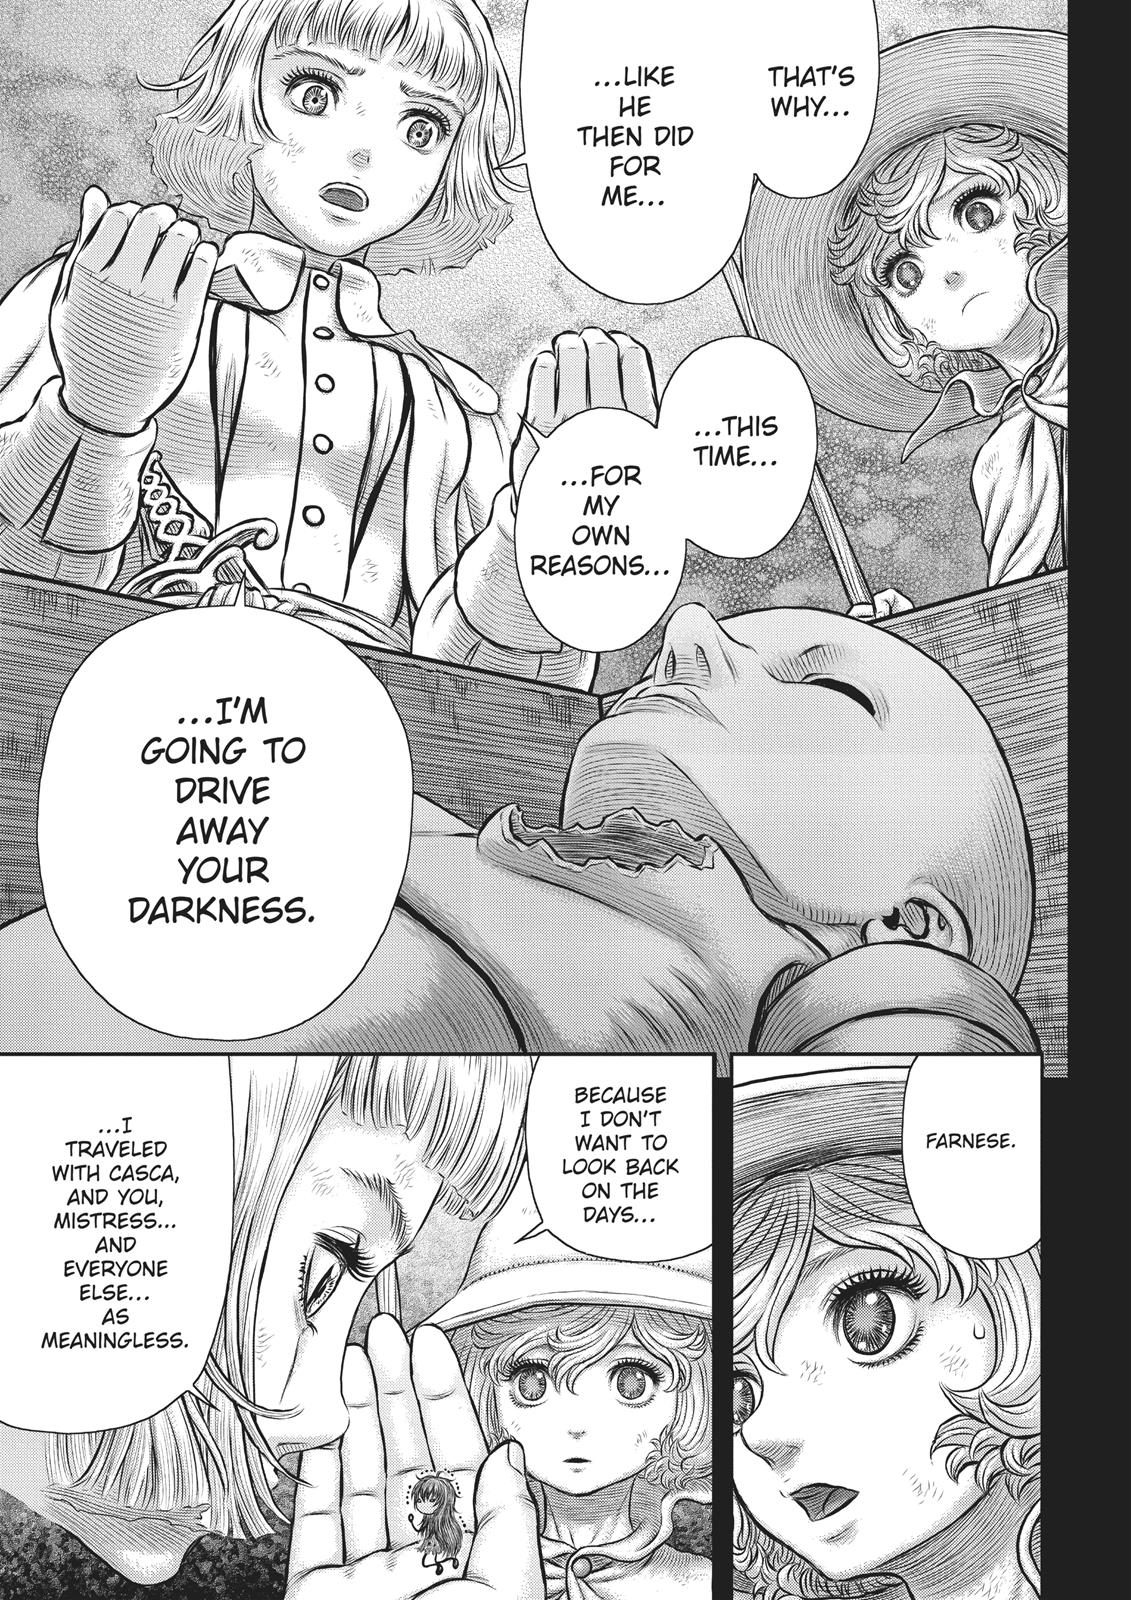 Berserk Manga Chapter 354 image 13